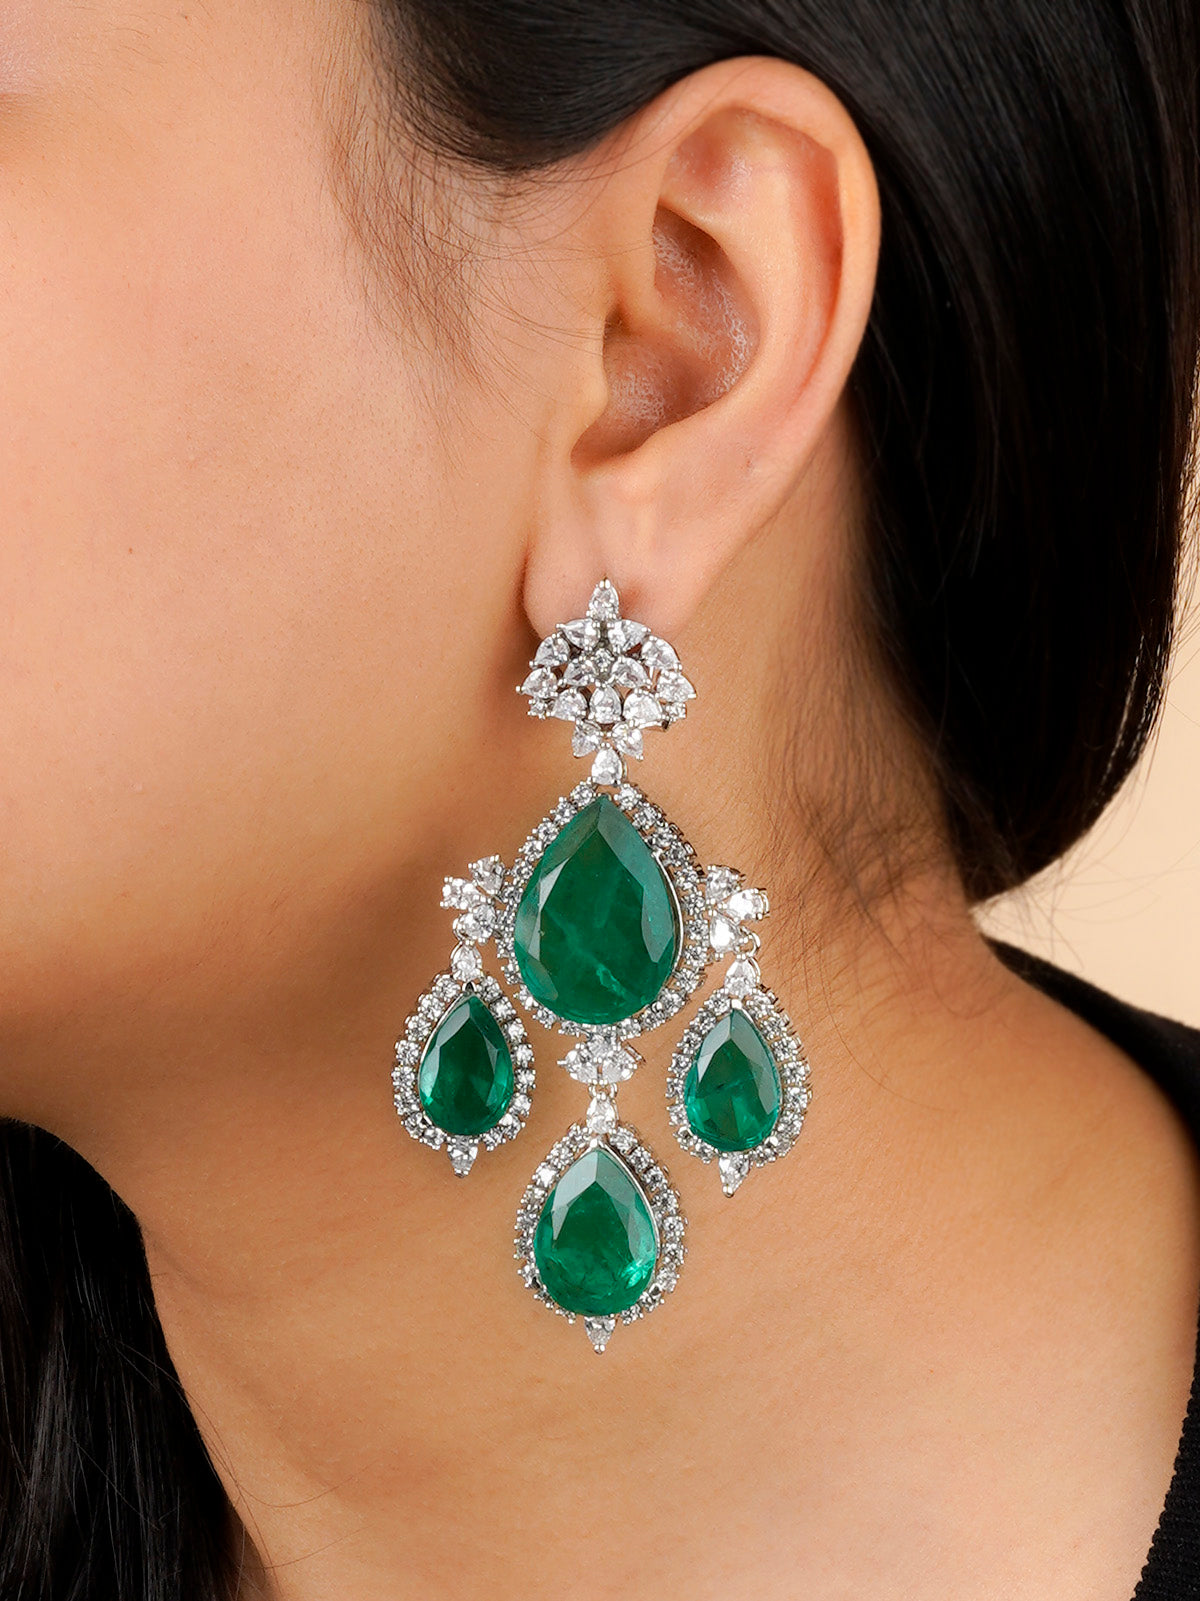 CZEAR540GR - Green Color Silver Plated Faux Diamond Earrings